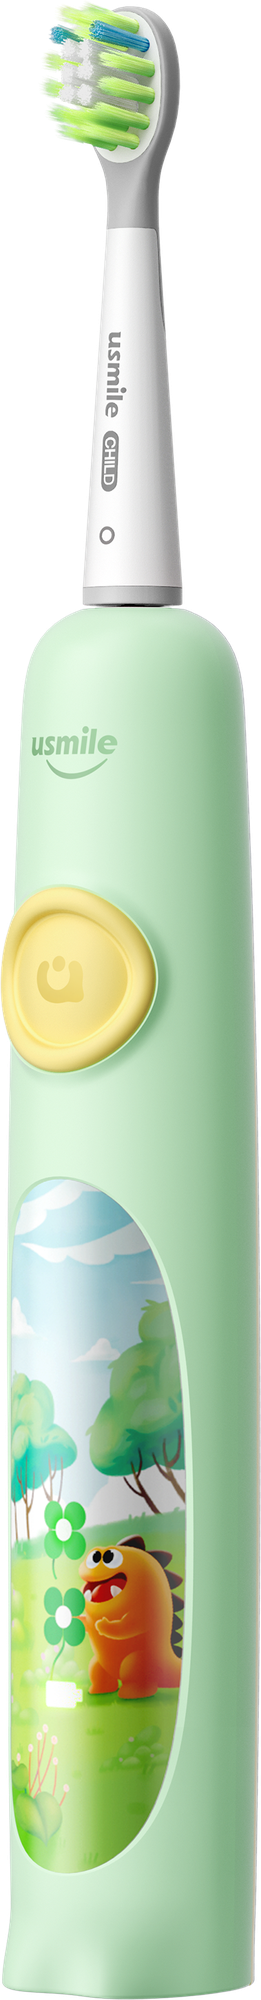 Электрическая зубная щетка usmile Q4, для детей, Зеленый